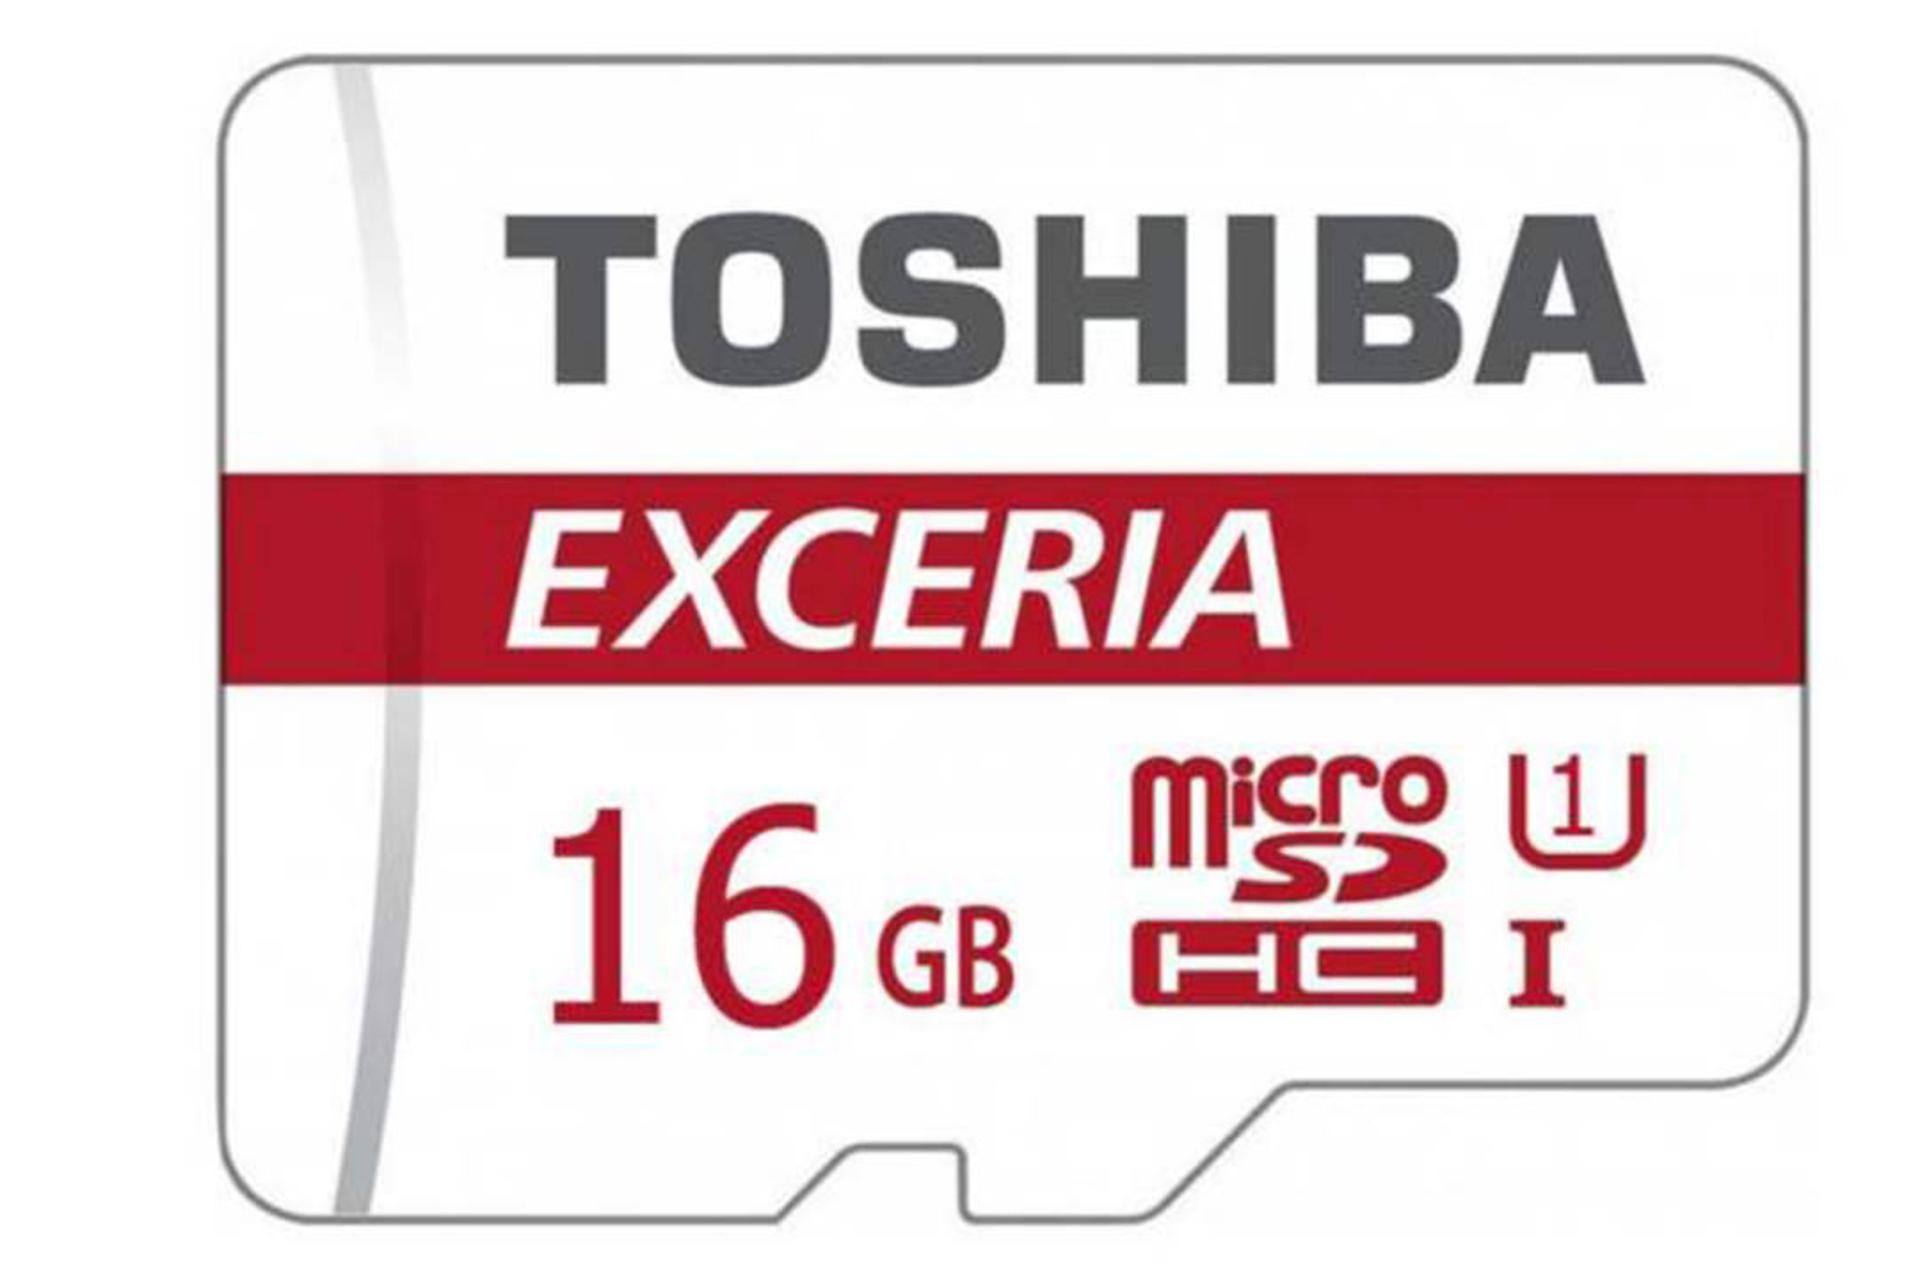 مرجع متخصصين ايران Toshiba M301 microSDHC Class 10 UHS-I U1 16GB